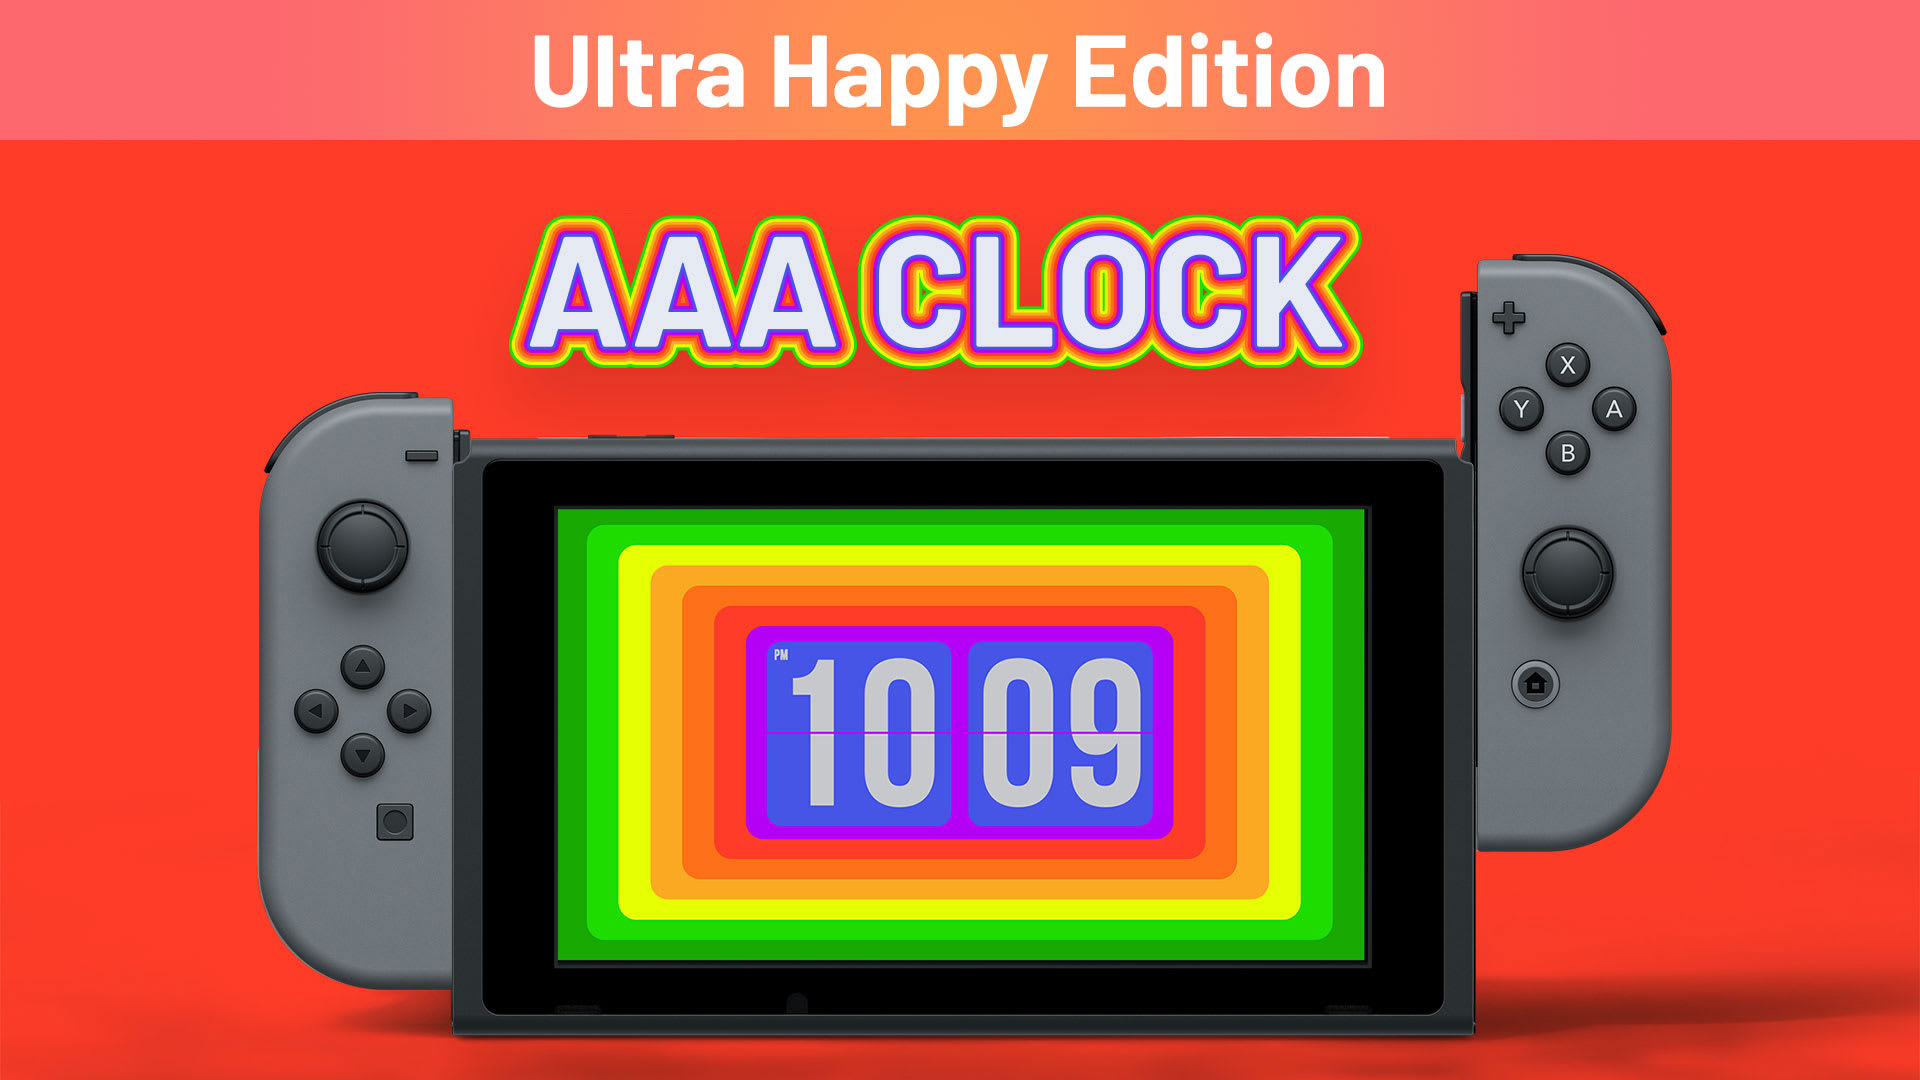 AAA Clock Ultra Happy Edition 1